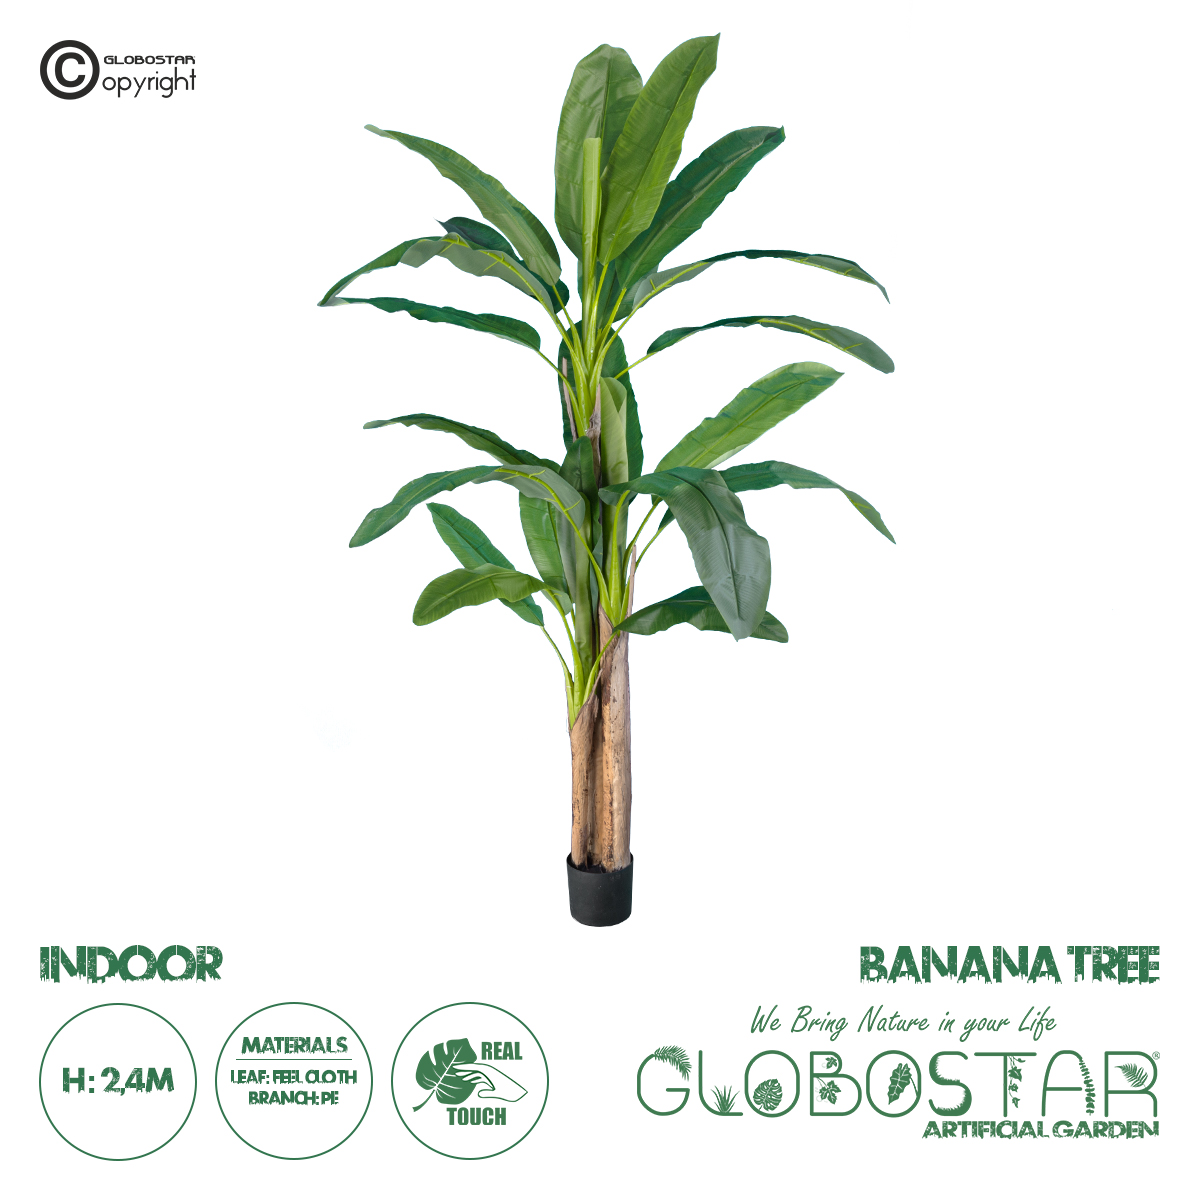 GloboStar® Artificial Garden BANANA TREE 20018 Τεχνητό Διακοσμητικό Φυτό Μπανανιά – Μπανανόδεντρο Υ240cm